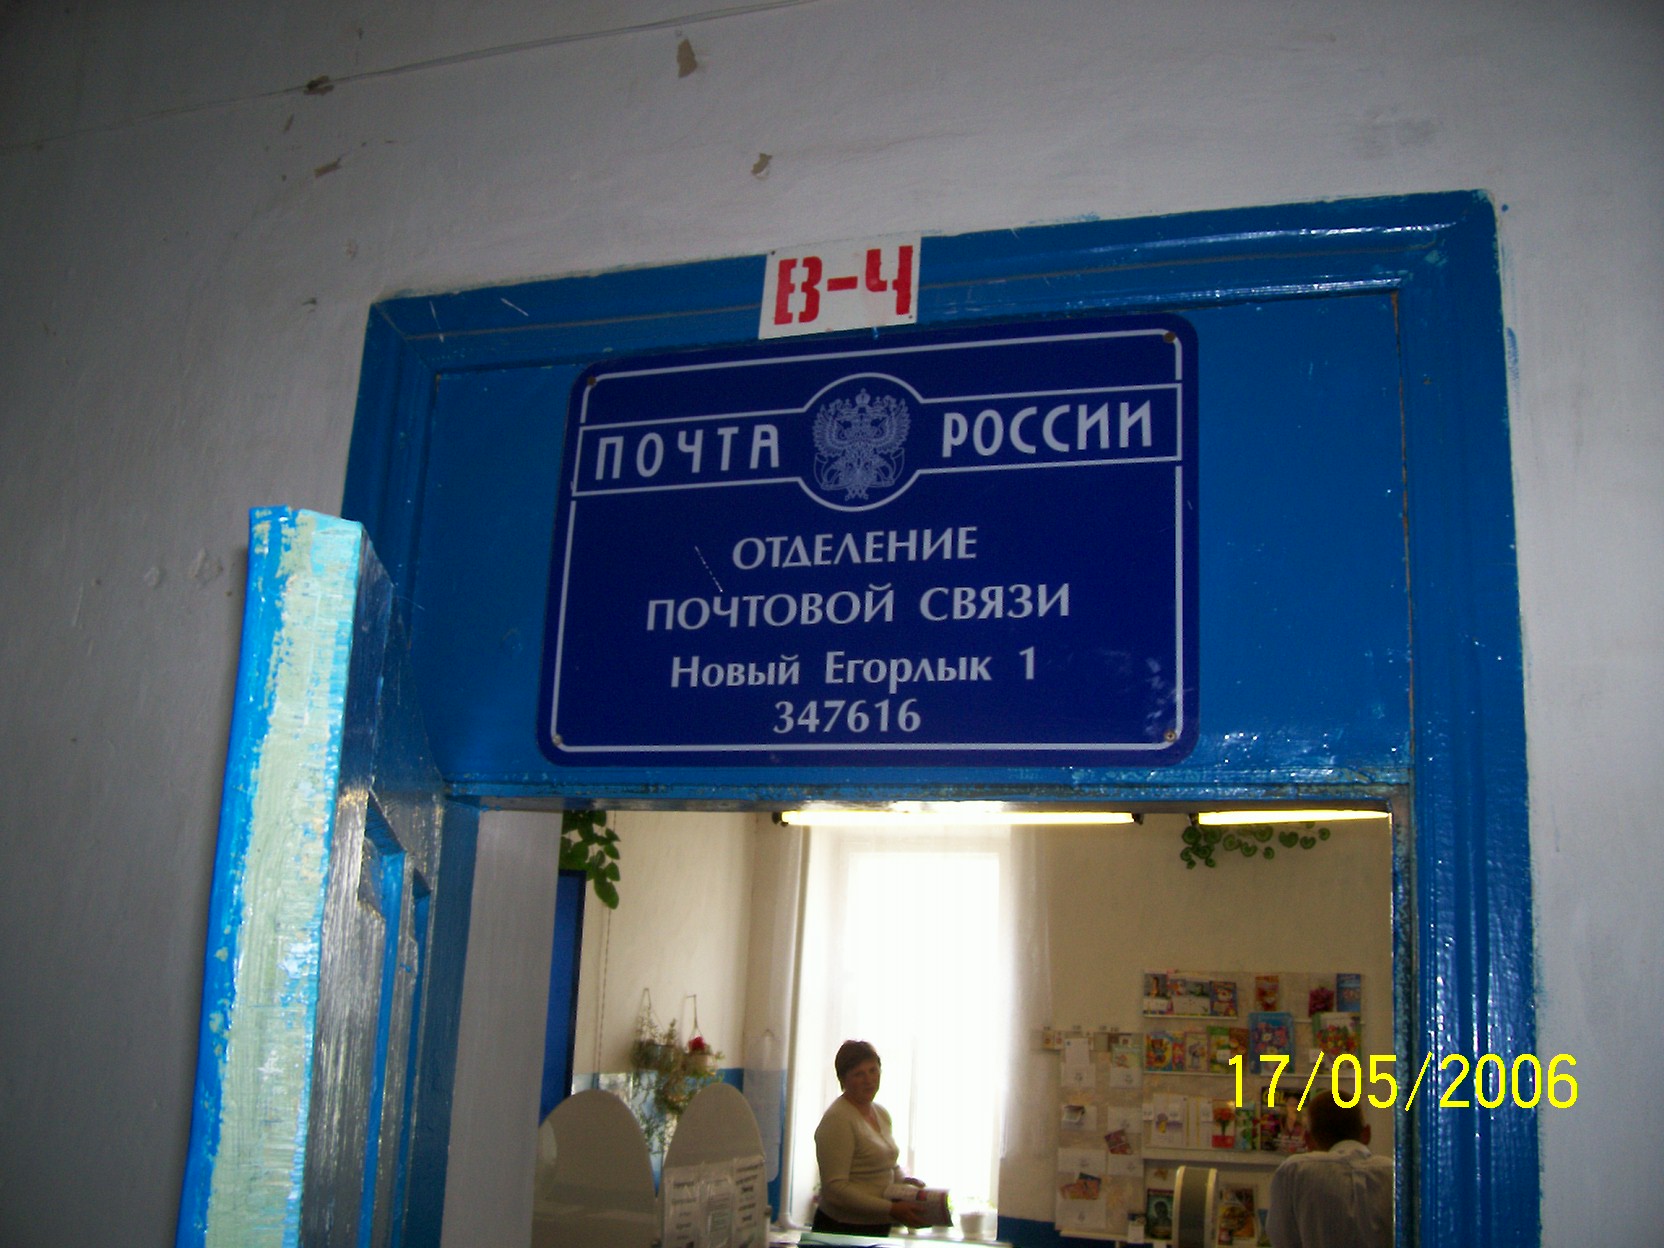 ВХОД, отделение почтовой связи 347616, Ростовская обл., Сальский р-он